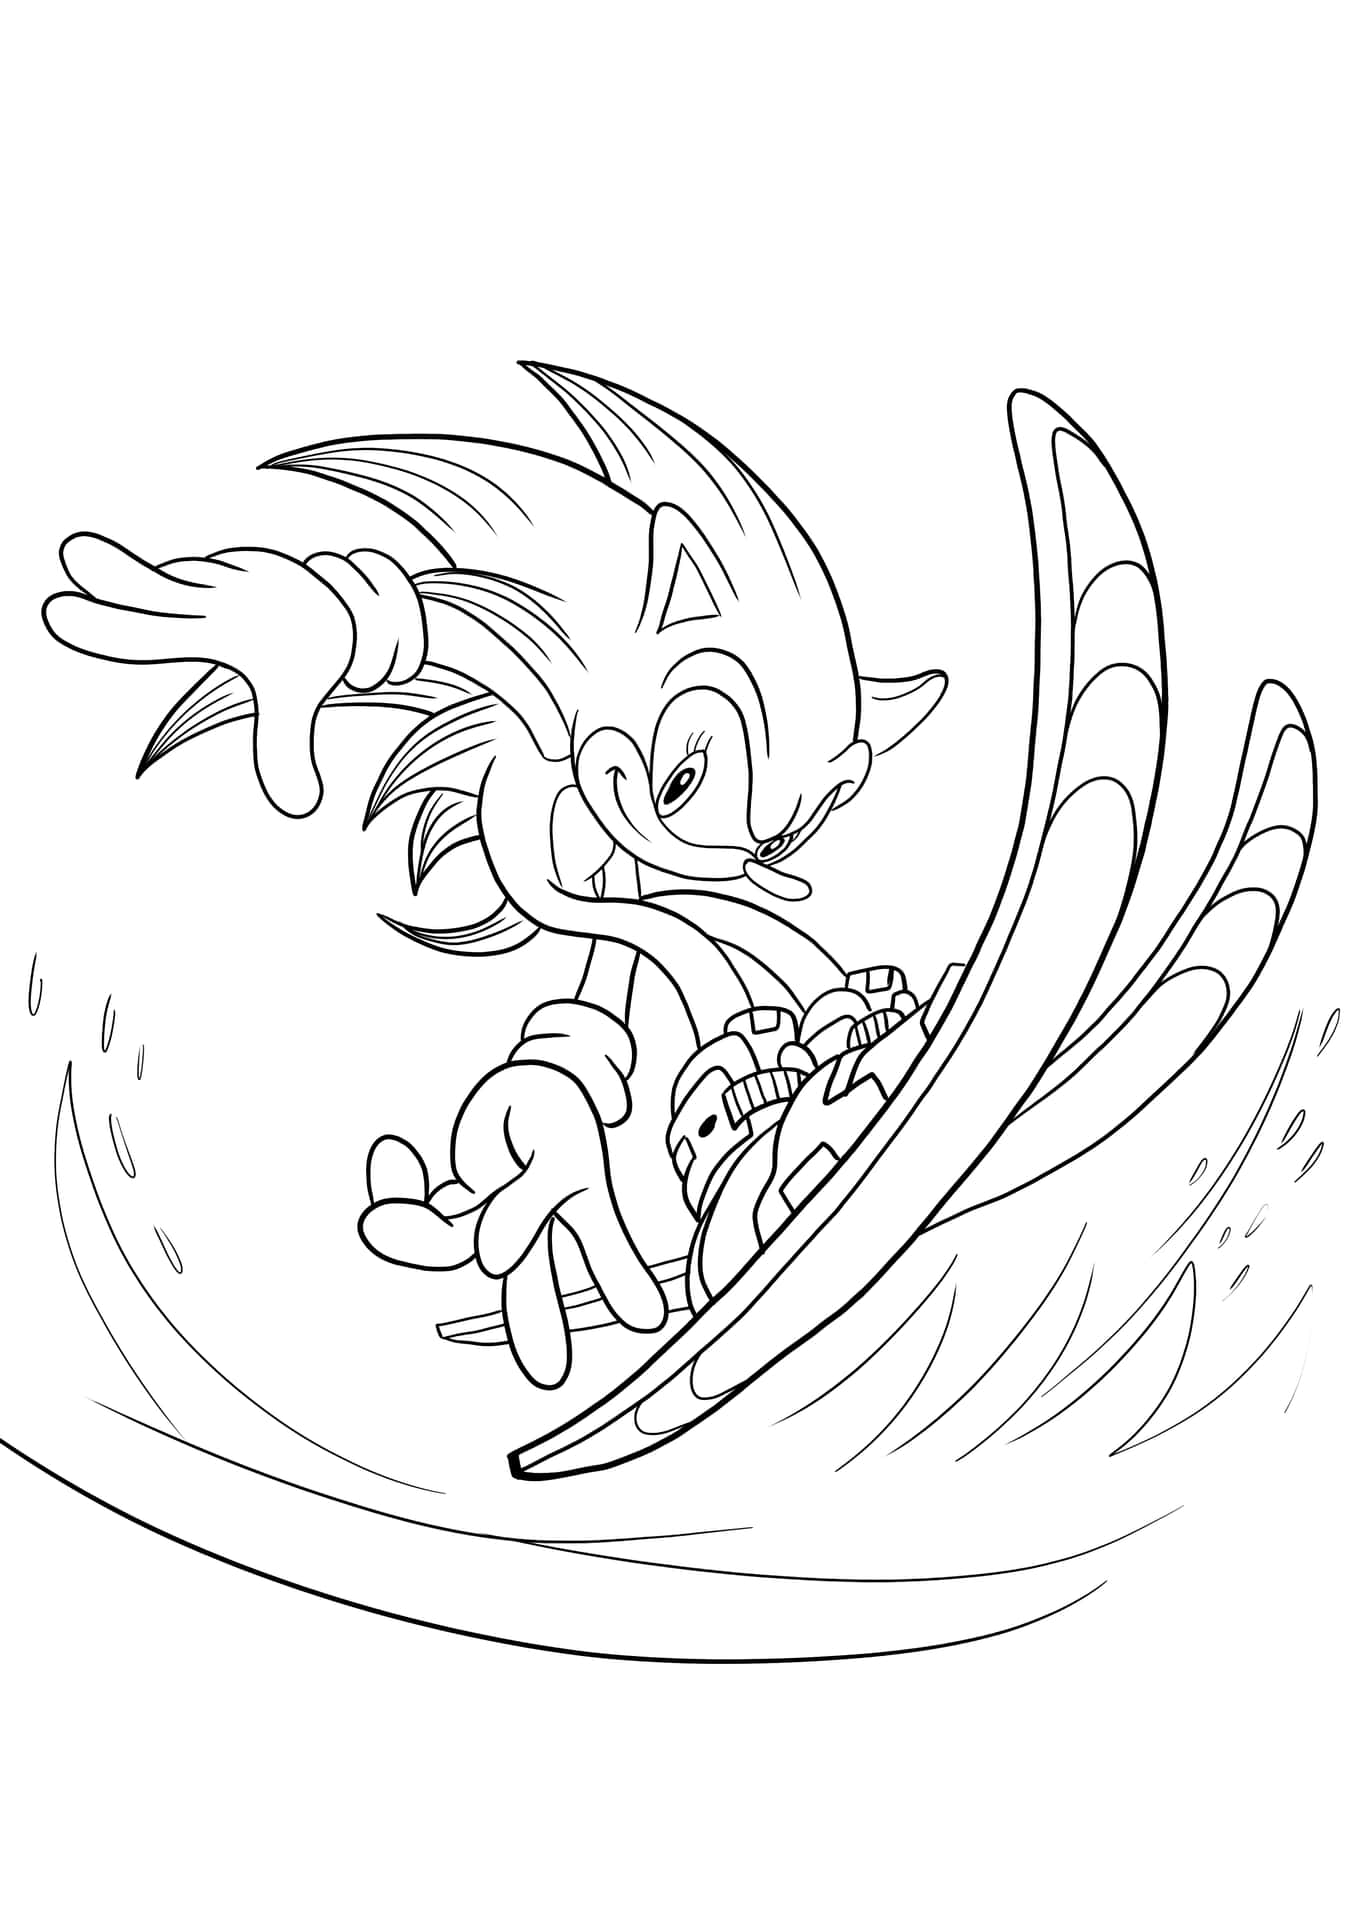 Imagende Sonic Esquiando Para Colorear.